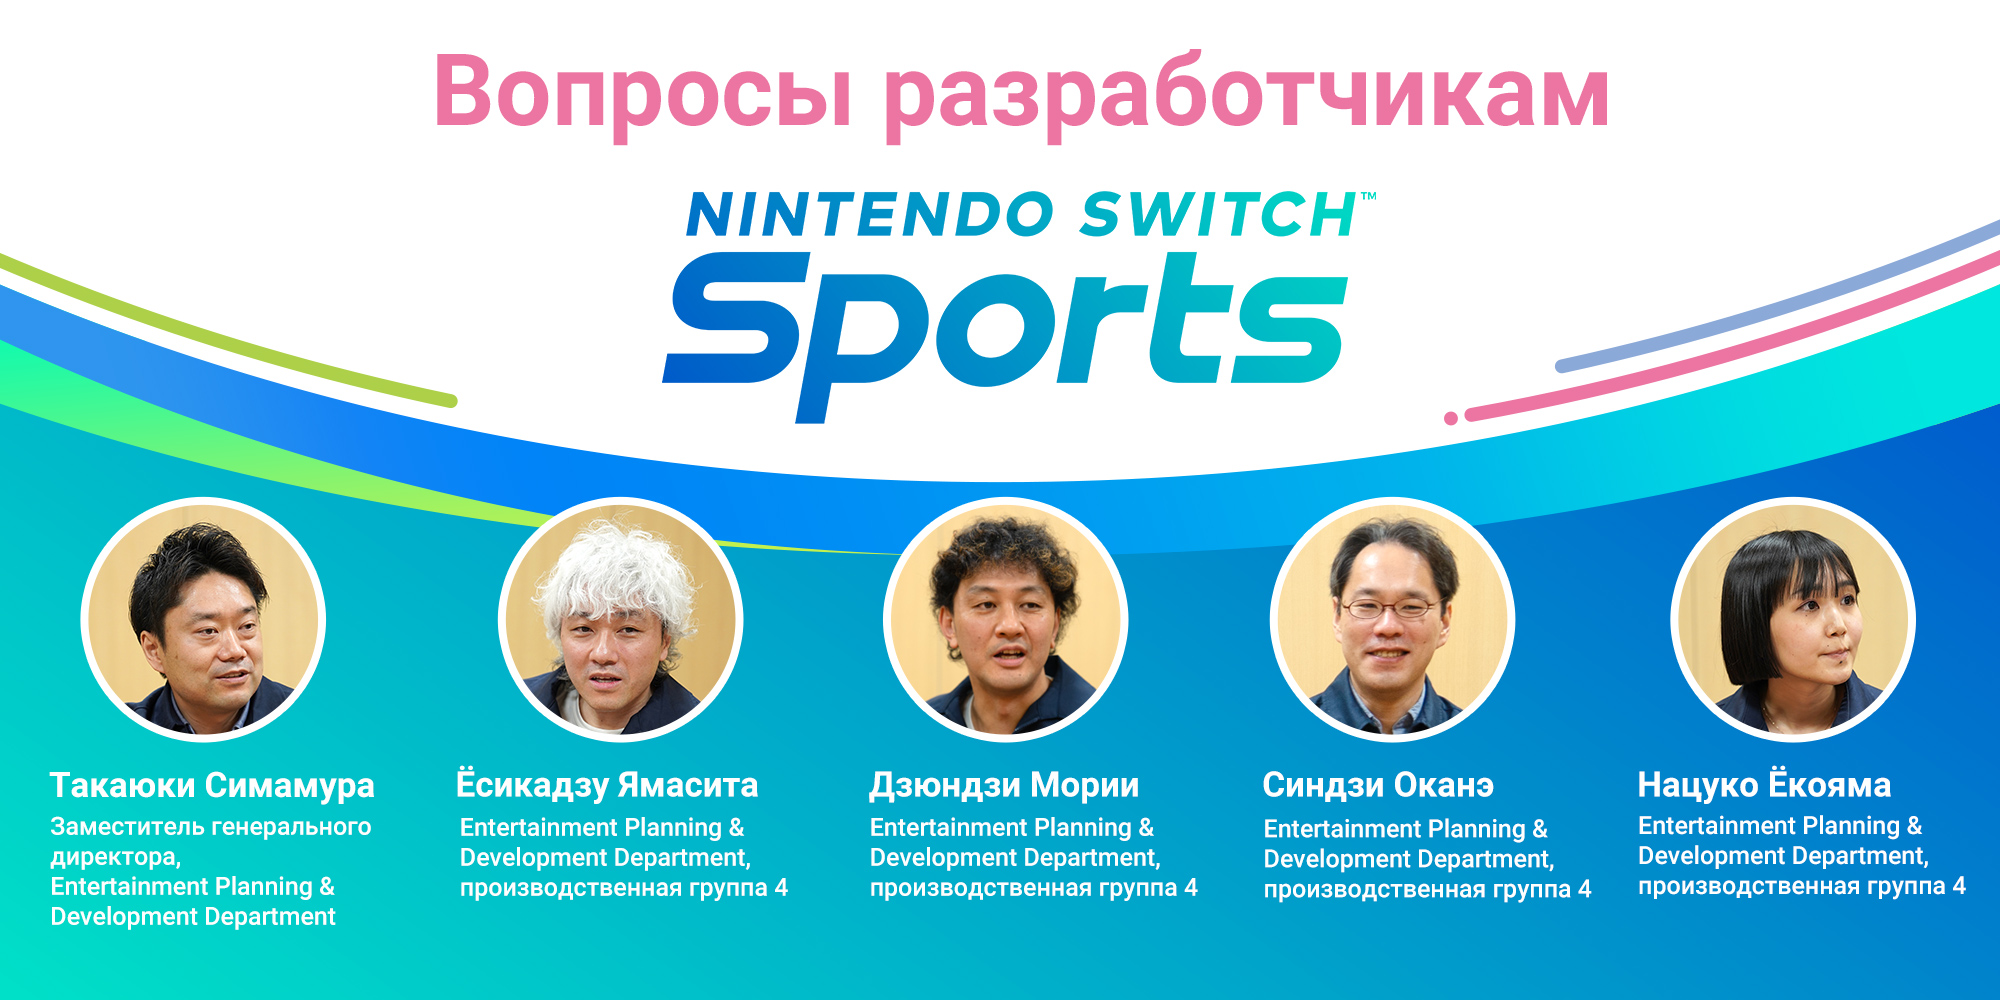 Вопросы разработчикам, часть 5: Nintendo Switch Sports